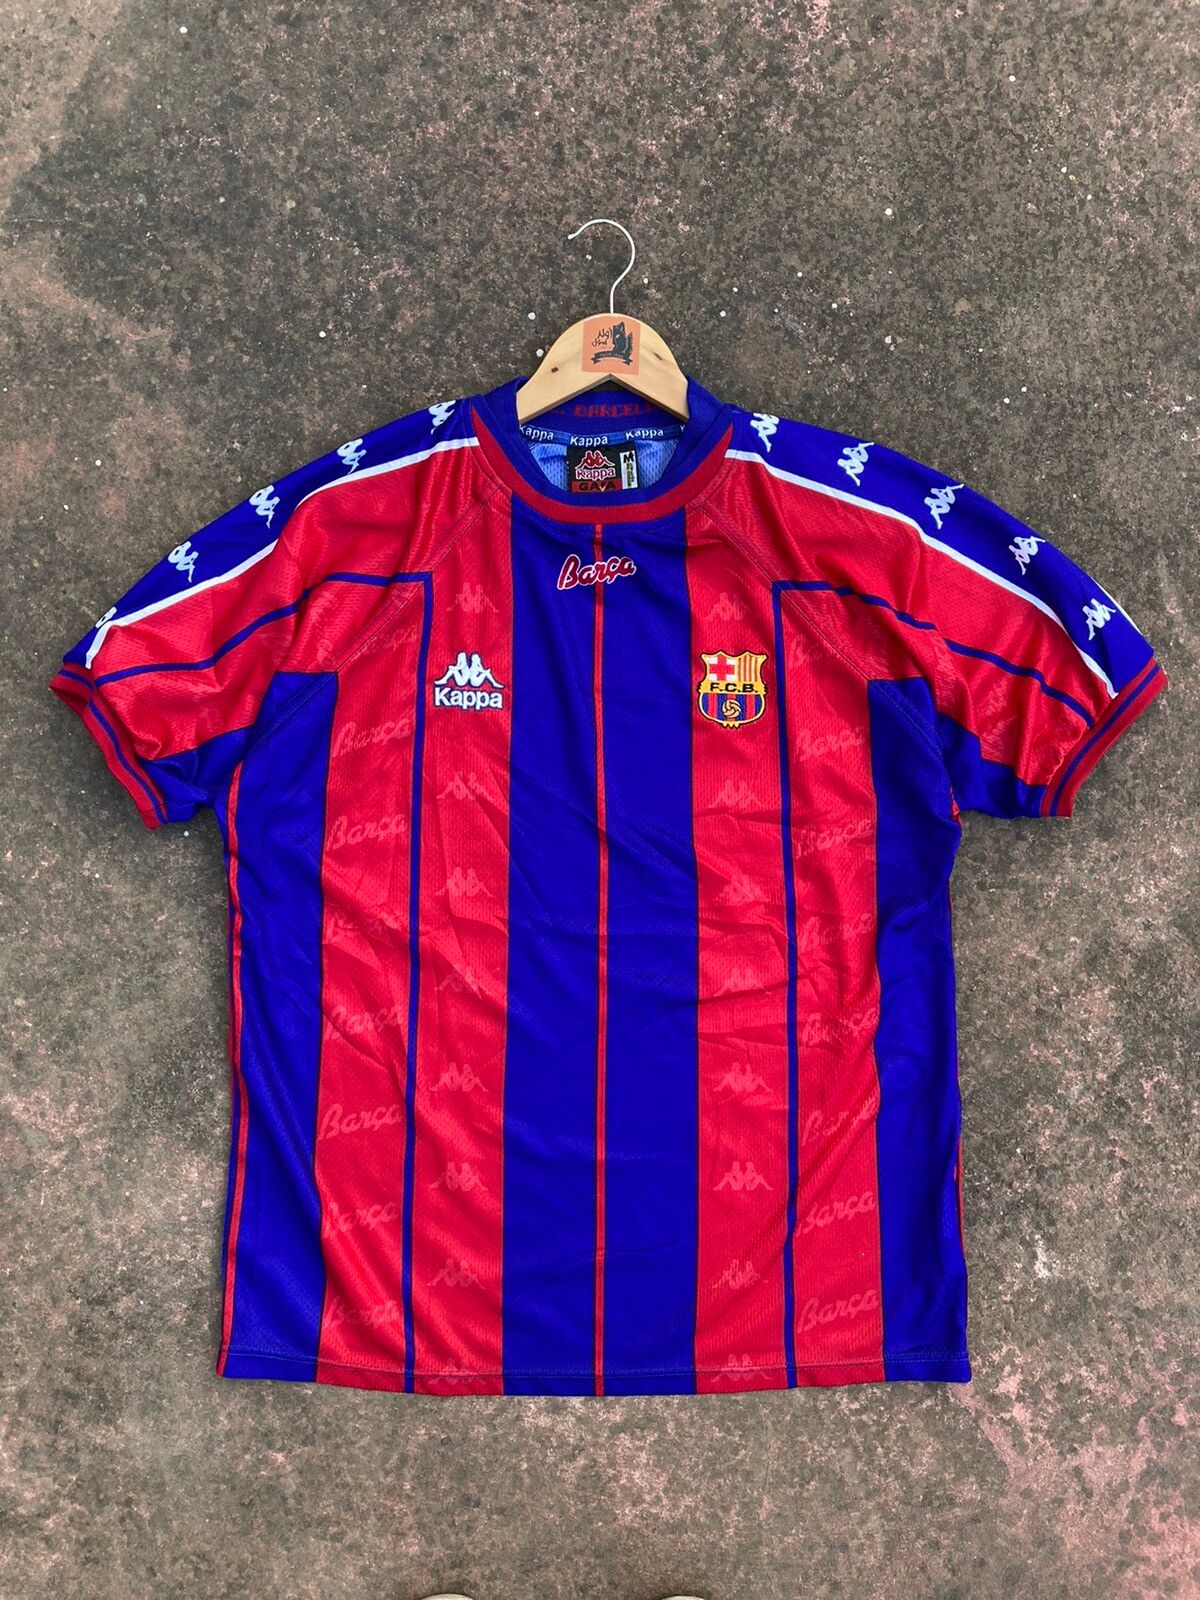 1997-98 Barcelona Home Shirt #23 DE LA PEÑA Champions League Kappa